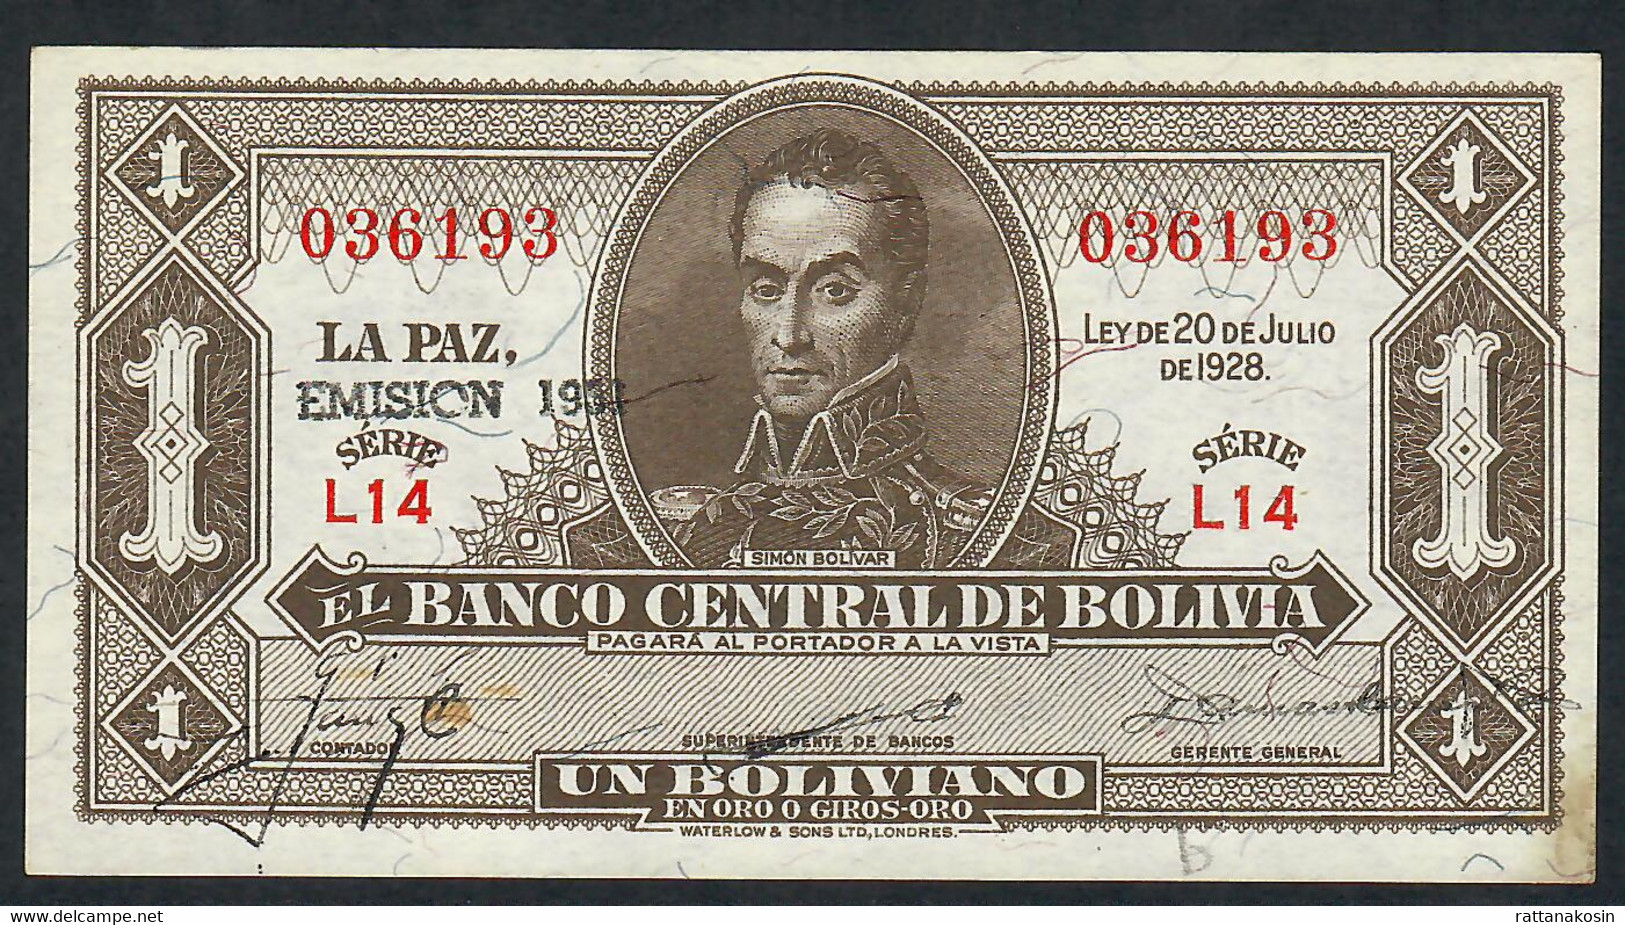 BOLIVIA P128k 1 BOLIVIANO 20.7.1928 EMISION 1951  #L4 Signature 23    AU - Bolivia